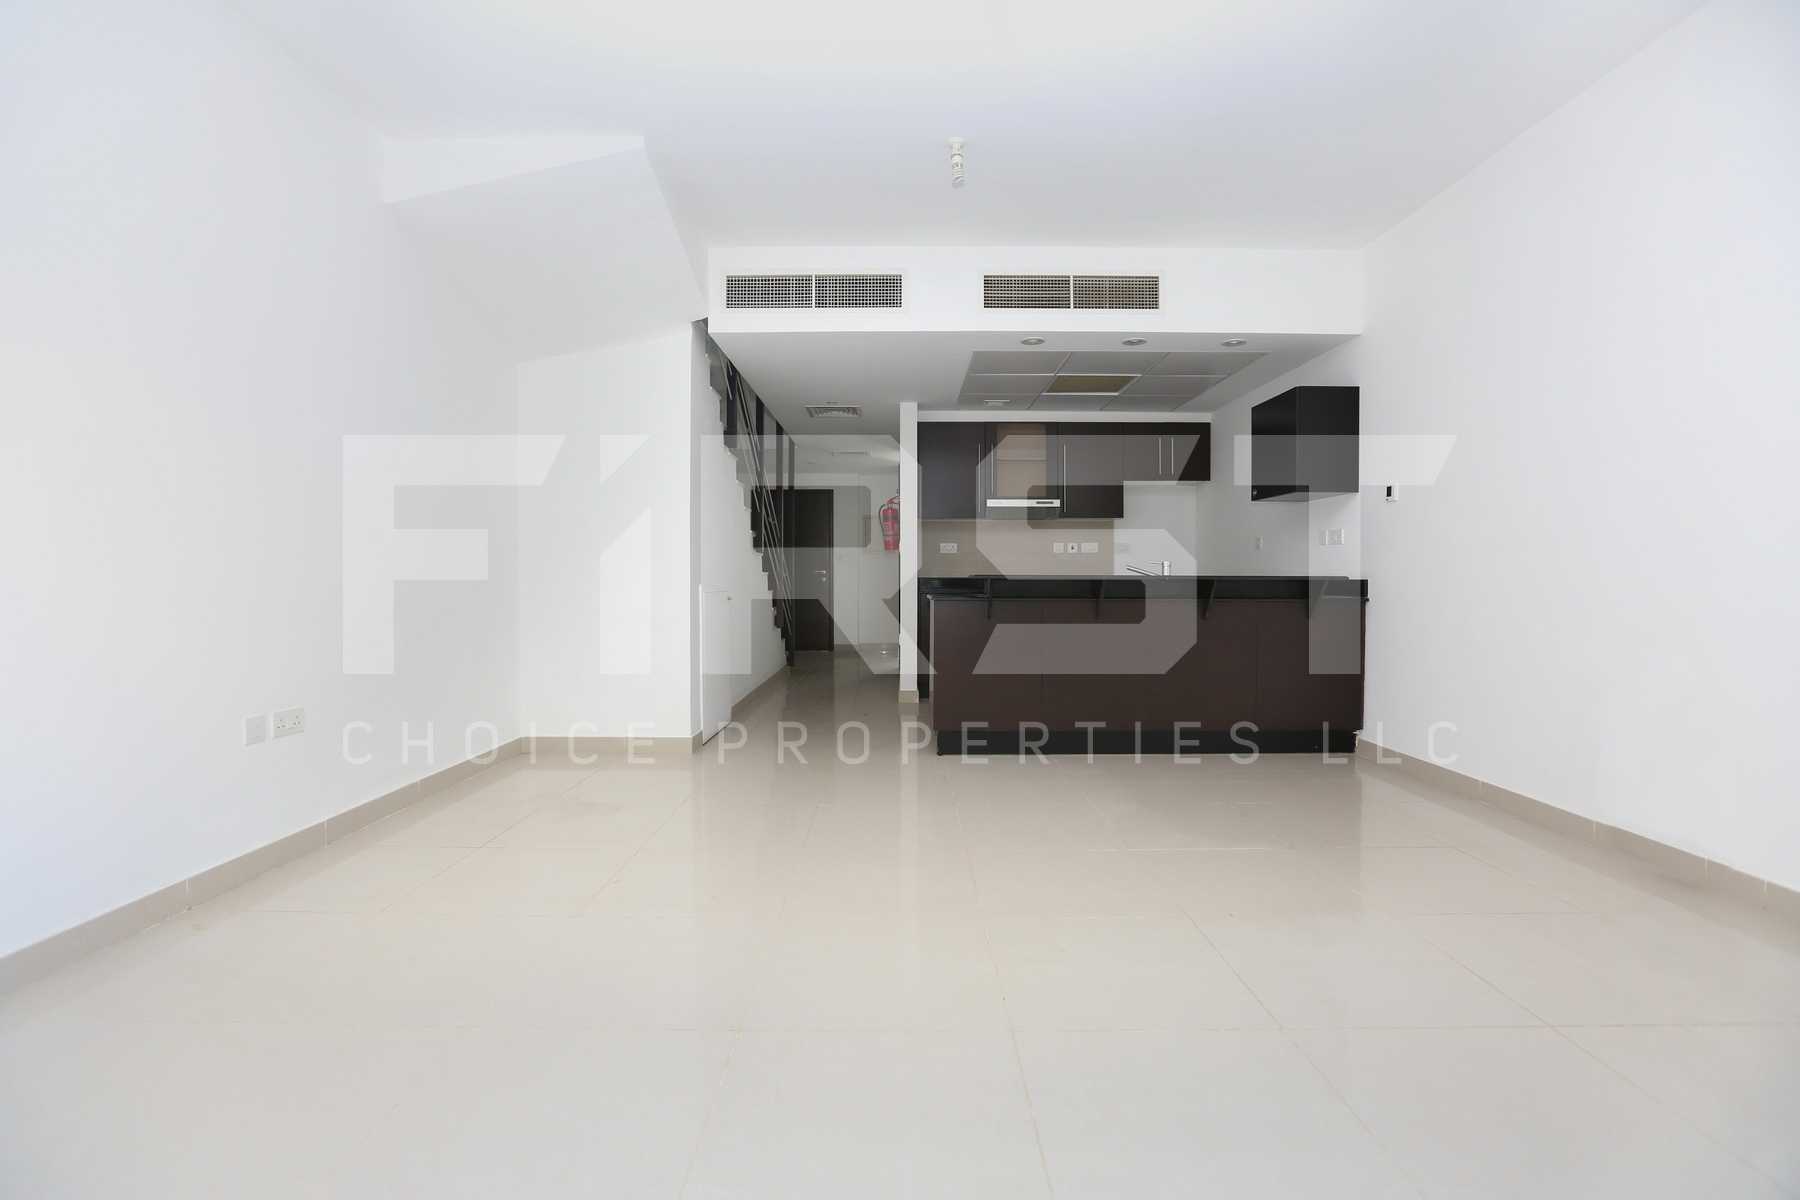 Internal Photo of 2 Bedroom Villa in Al Reef Villas  Al Reef Abu Dhabi UAE 170.2 sq.m 1832 sq.ft (7).jpg